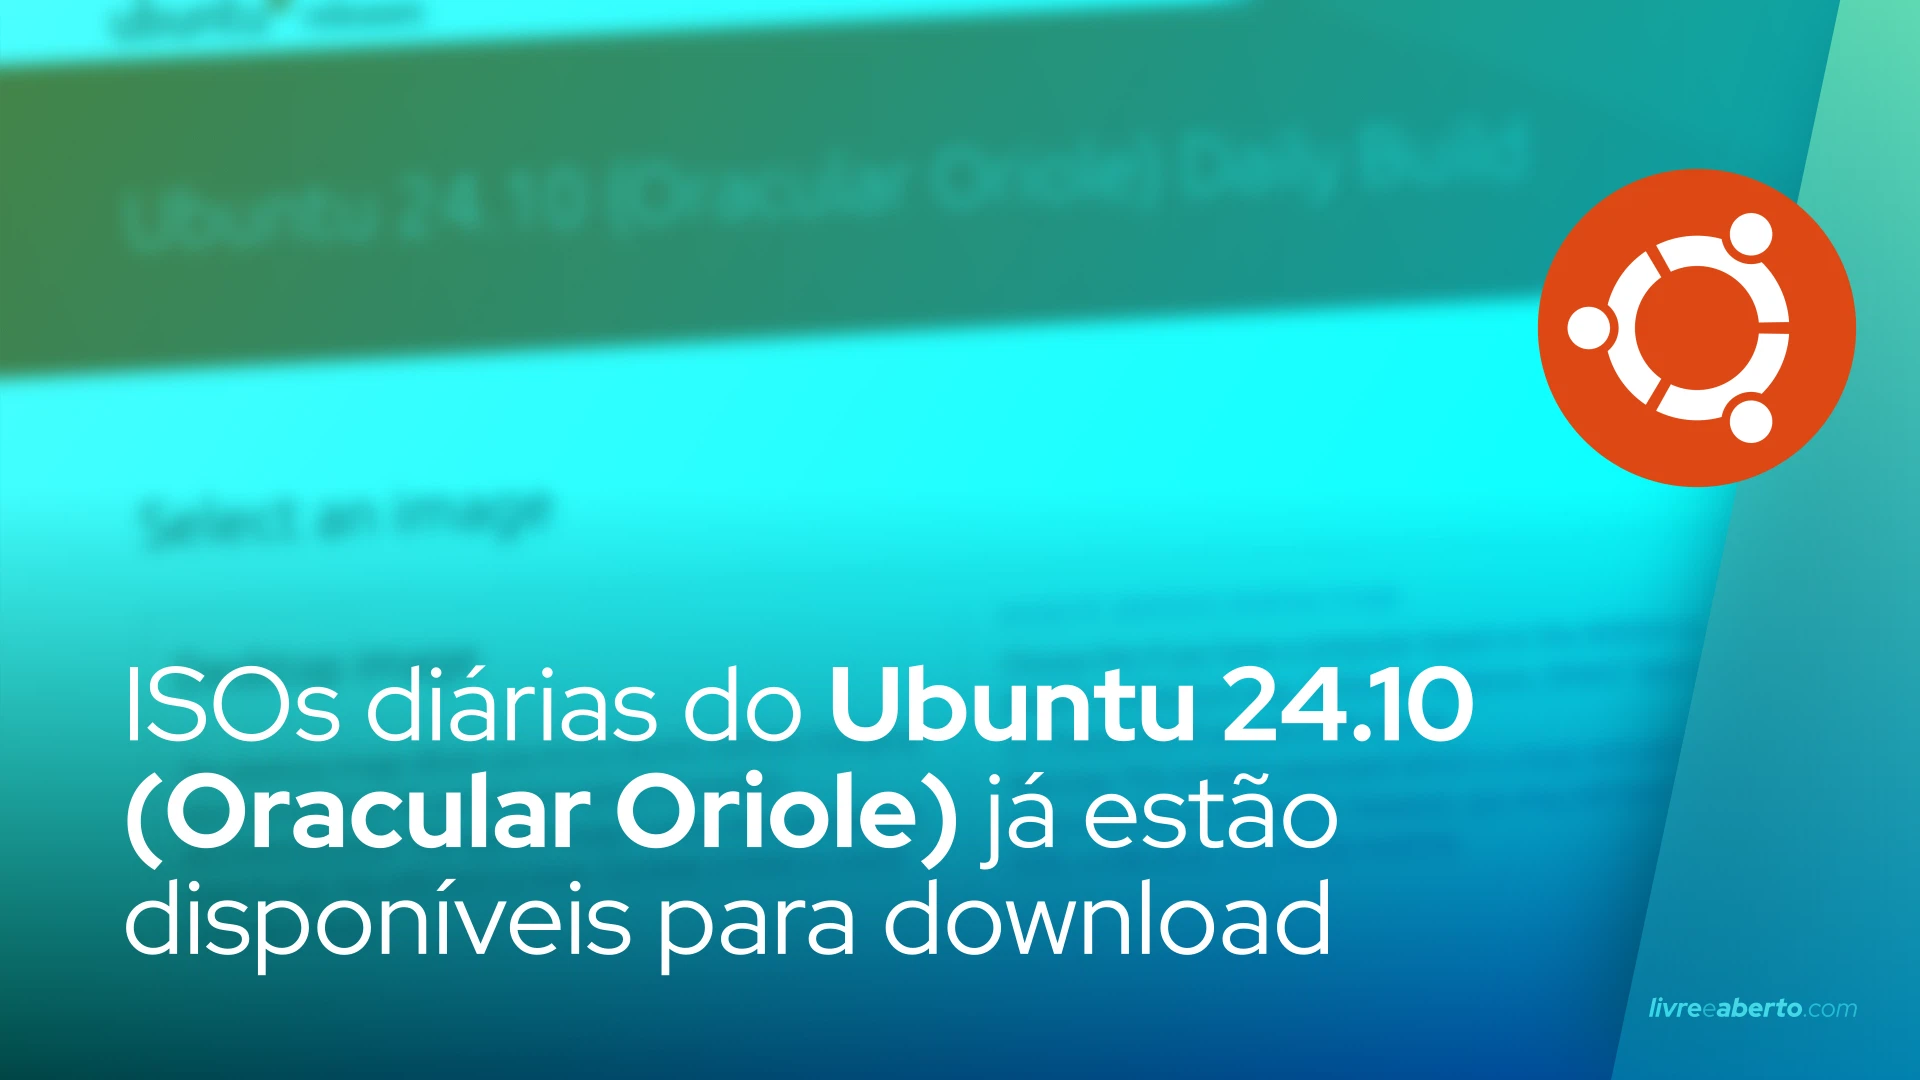 ISOs diárias do Ubuntu 24.10 (Oracular Oriole) já estão disponíveis para download